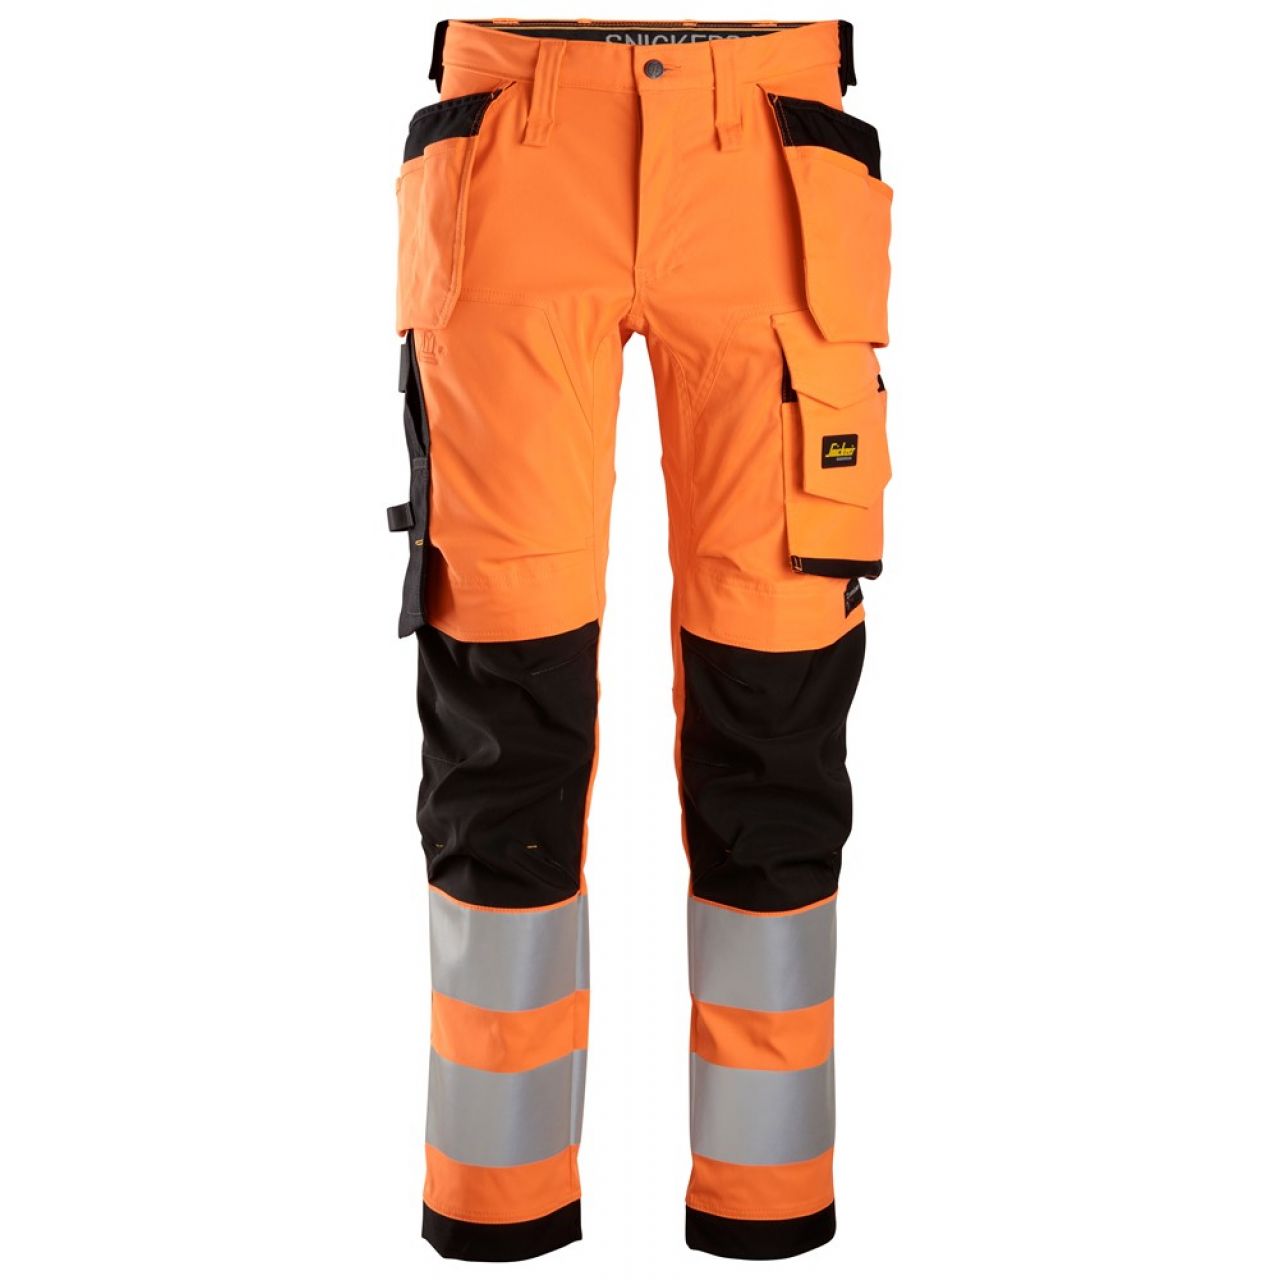 6243 Pantalones largos de trabajo elásticos de alta visibilidad clase 2 con bolsillos flotantes naranja-negro talla 100